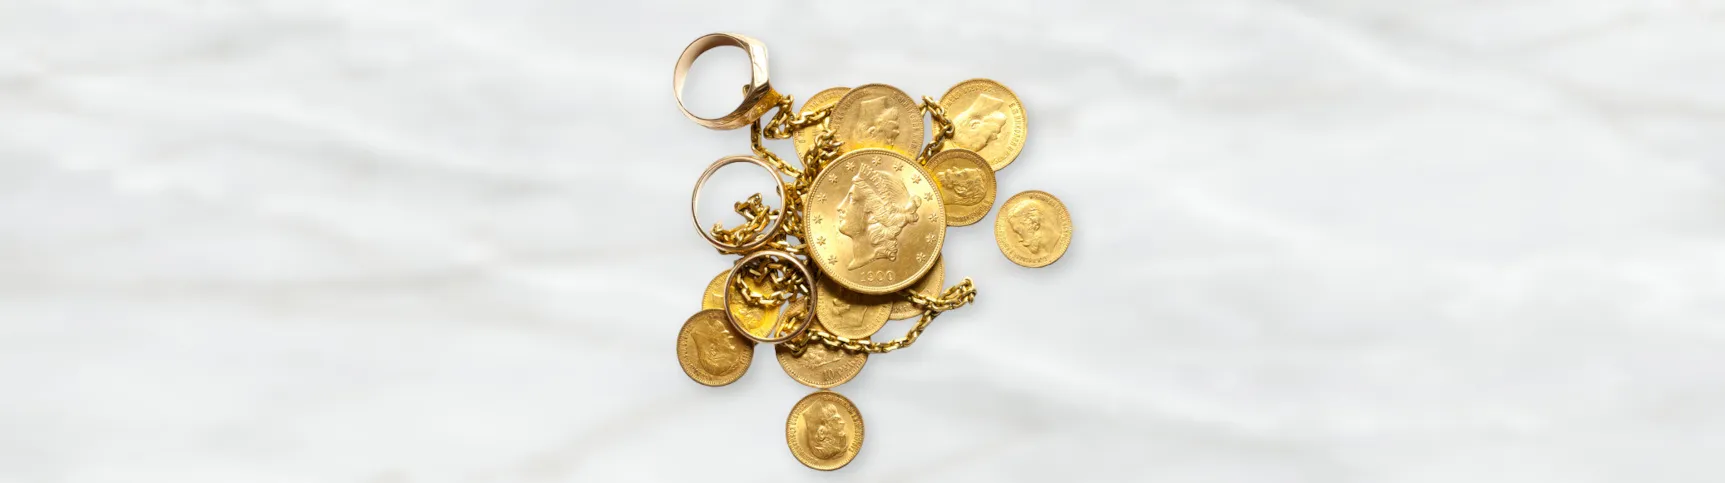 Zwölf goldene Münzen in verschiedenen Größen, mit einer Goldkette und drei goldenen Ringen. Der Hintergrund ist hell gehalten.